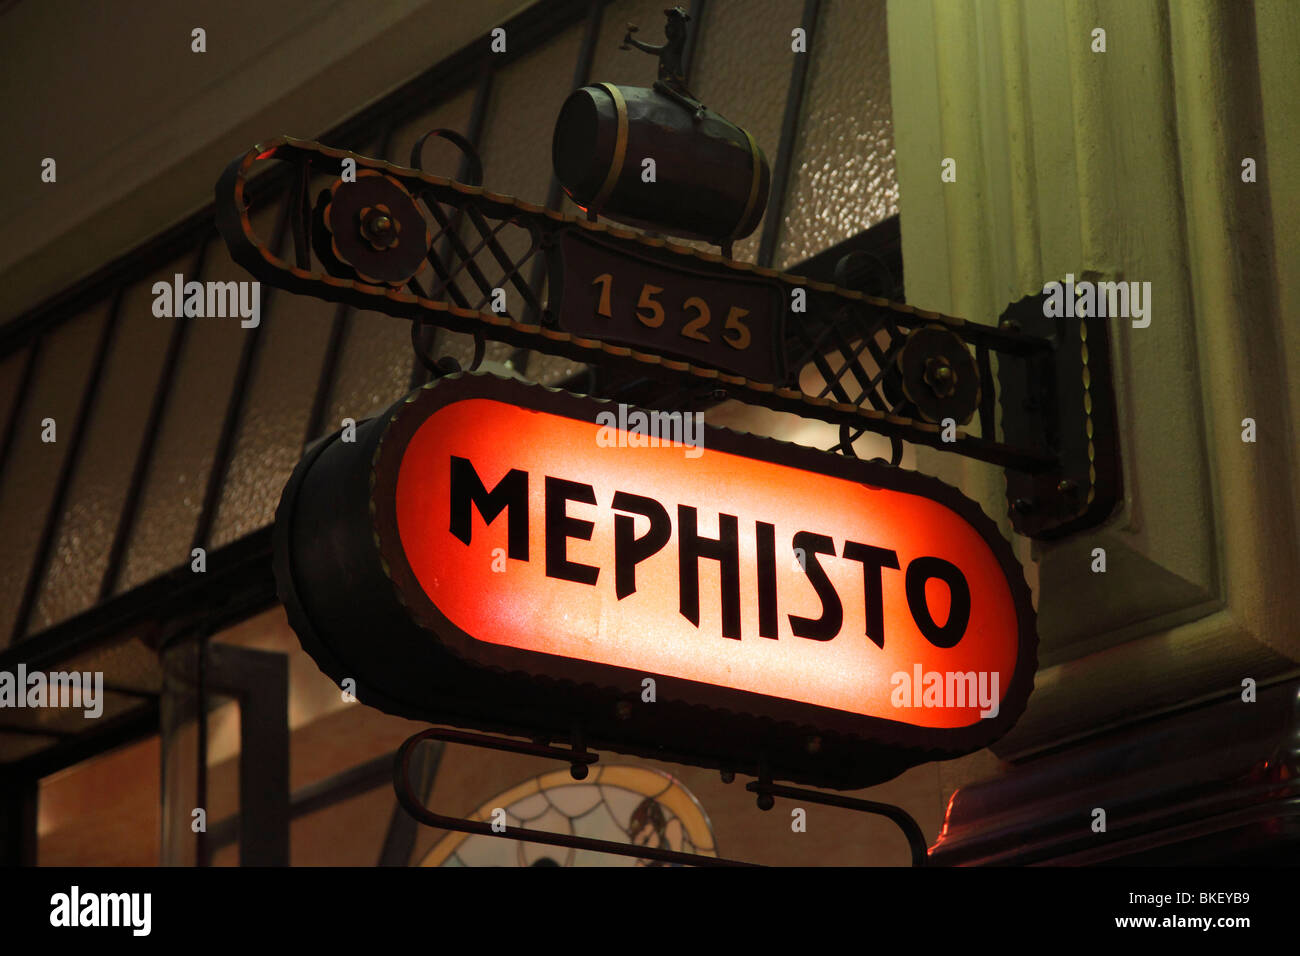 Mephisto Bar der jüngste Teil des historischen Restaurant Auerbachs Keller in Leipzig, Deutschland; Goethe war hier zu Gast. Stockfoto